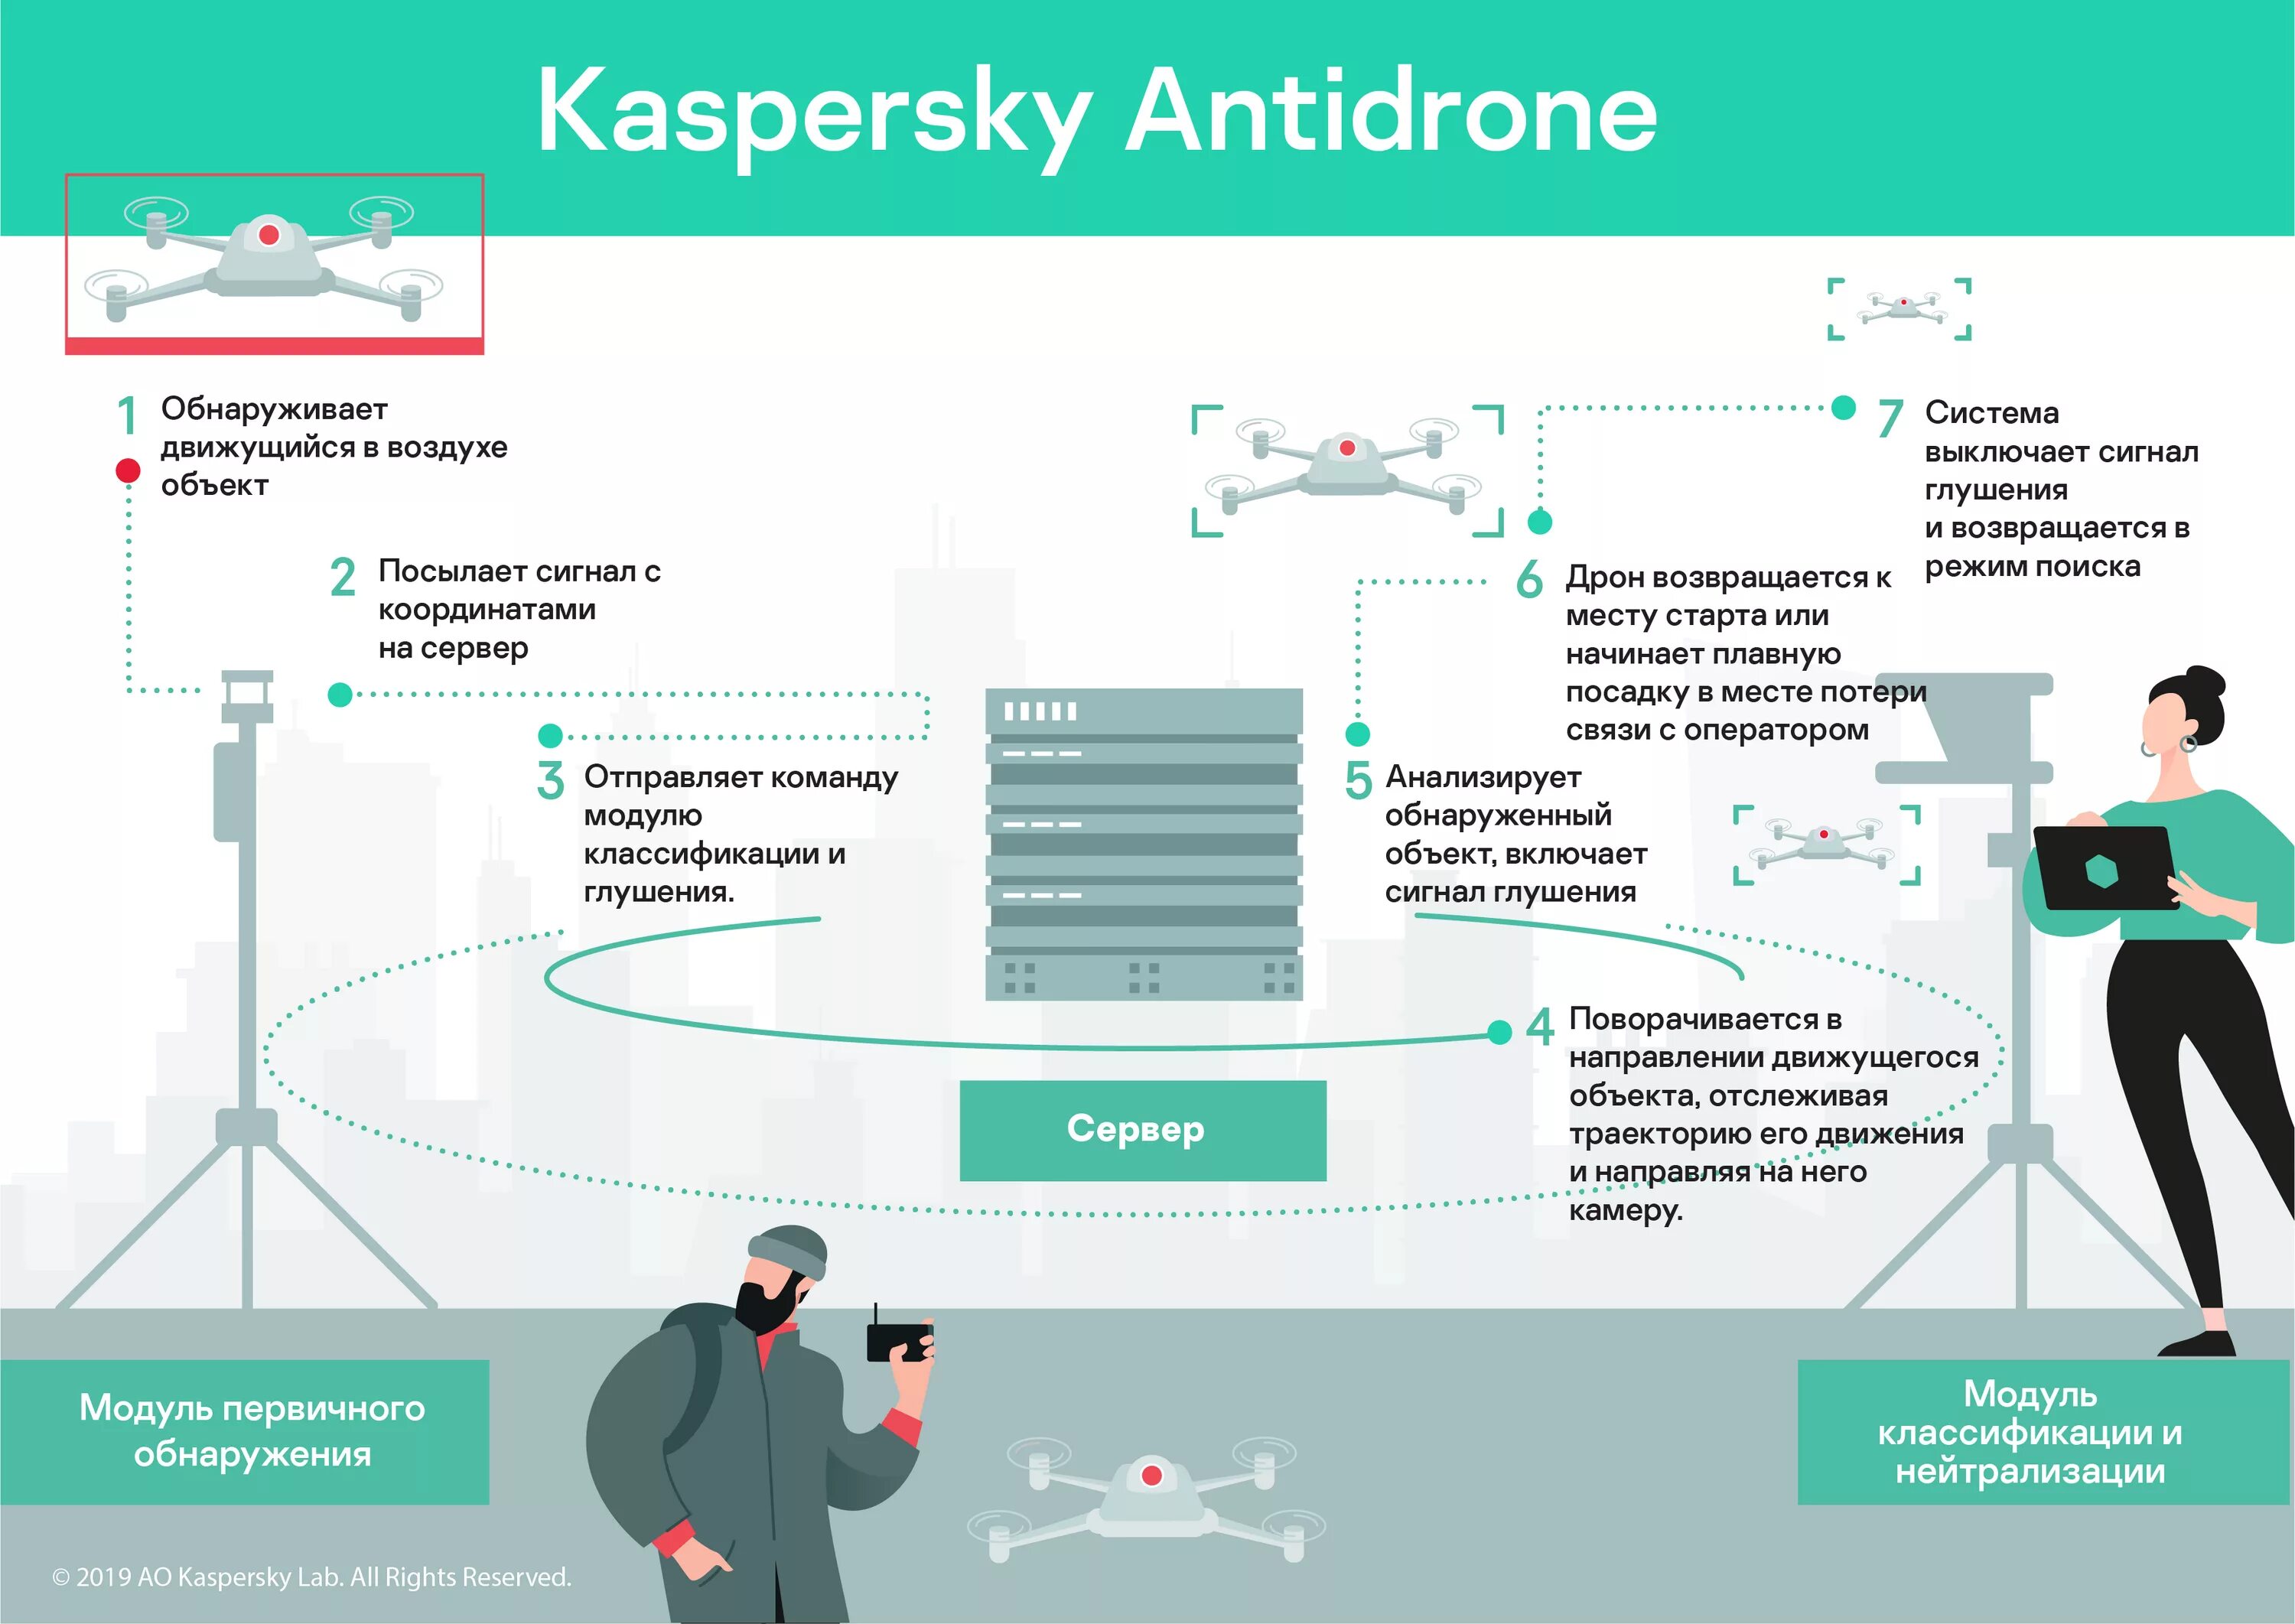 Kaspersky antidrone БПЛА. Система обнаружения от БПЛА. Обнаружение и идентификация объектов с БПЛА. Системы противодействия беспилотникам. Как вести себя при атаке беспилотника